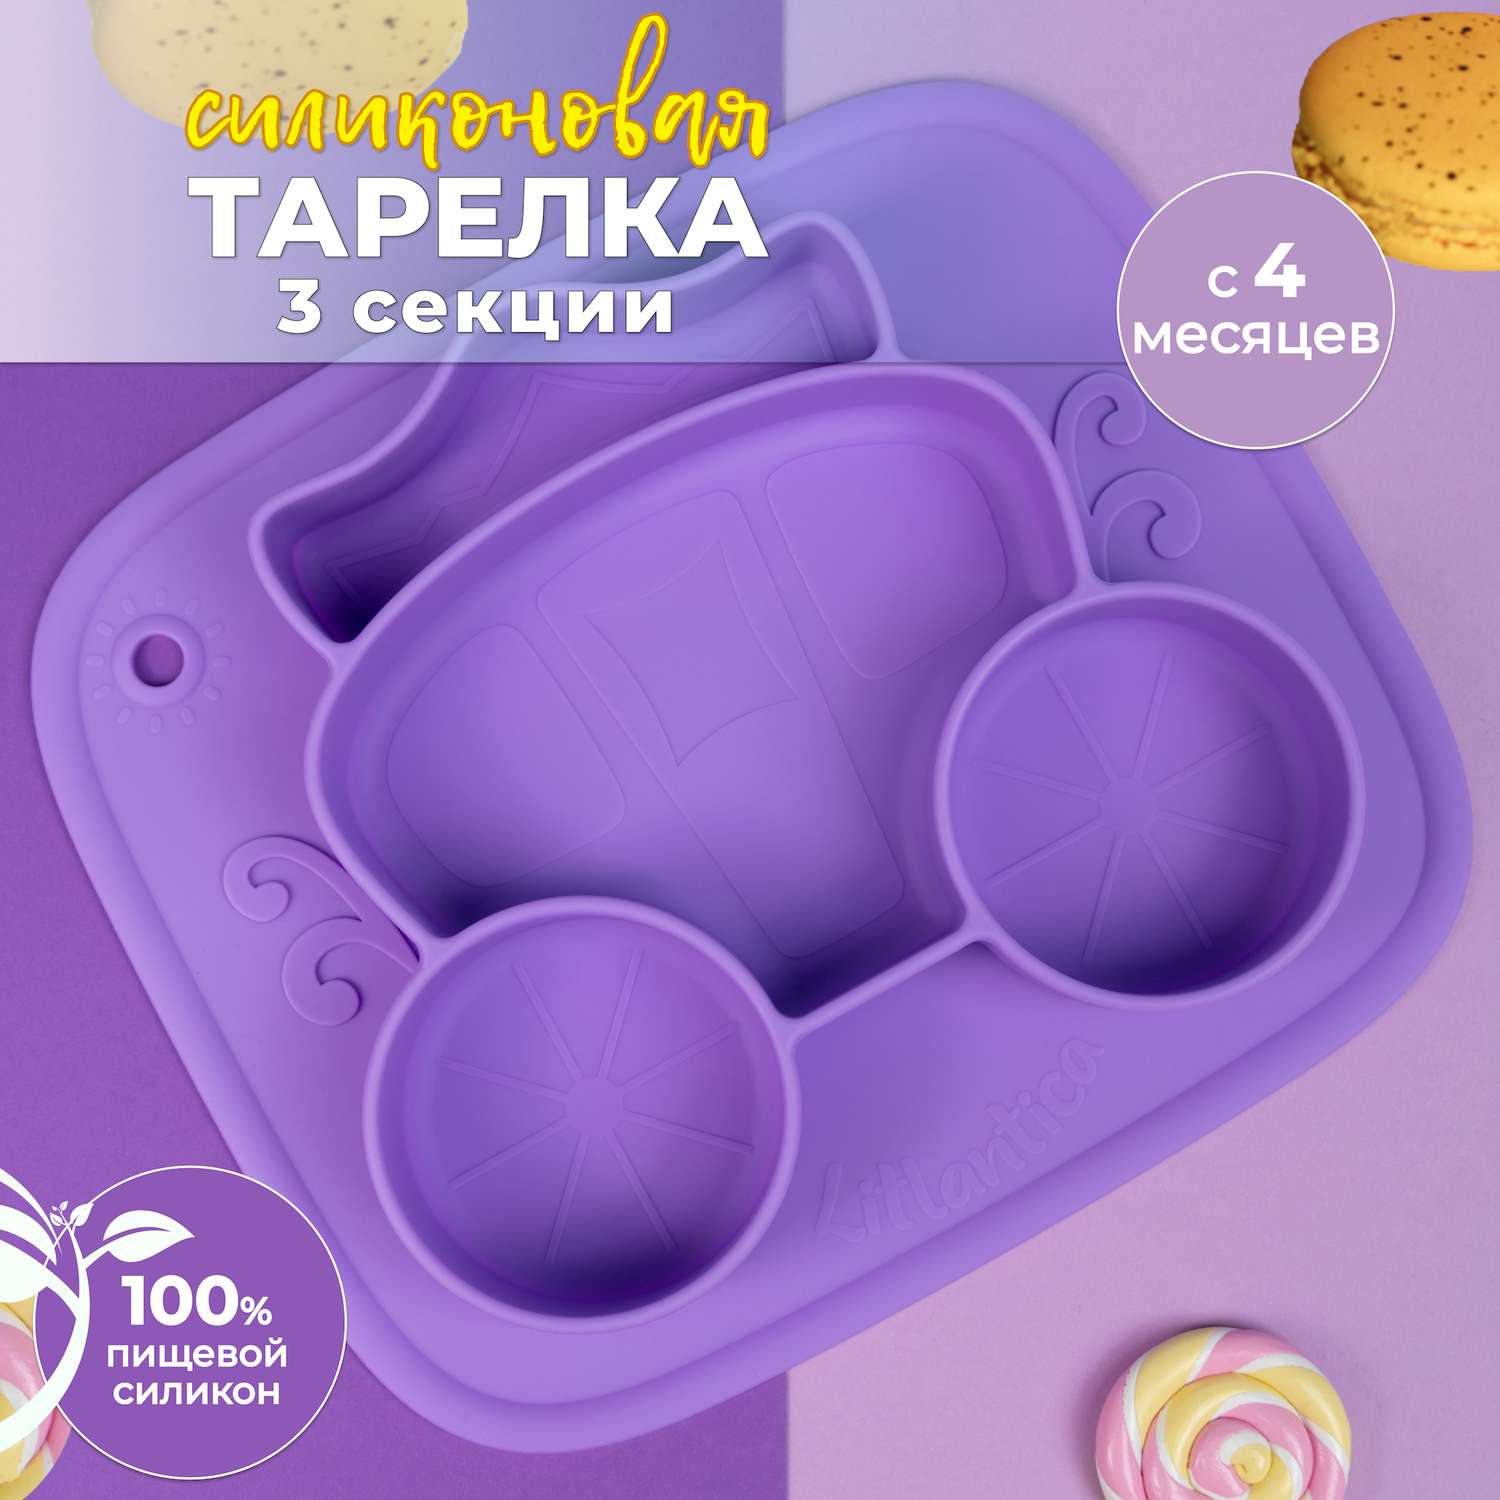 Cиликоновая тарелка присоска Litlantica карета фиолетовая - фото 2